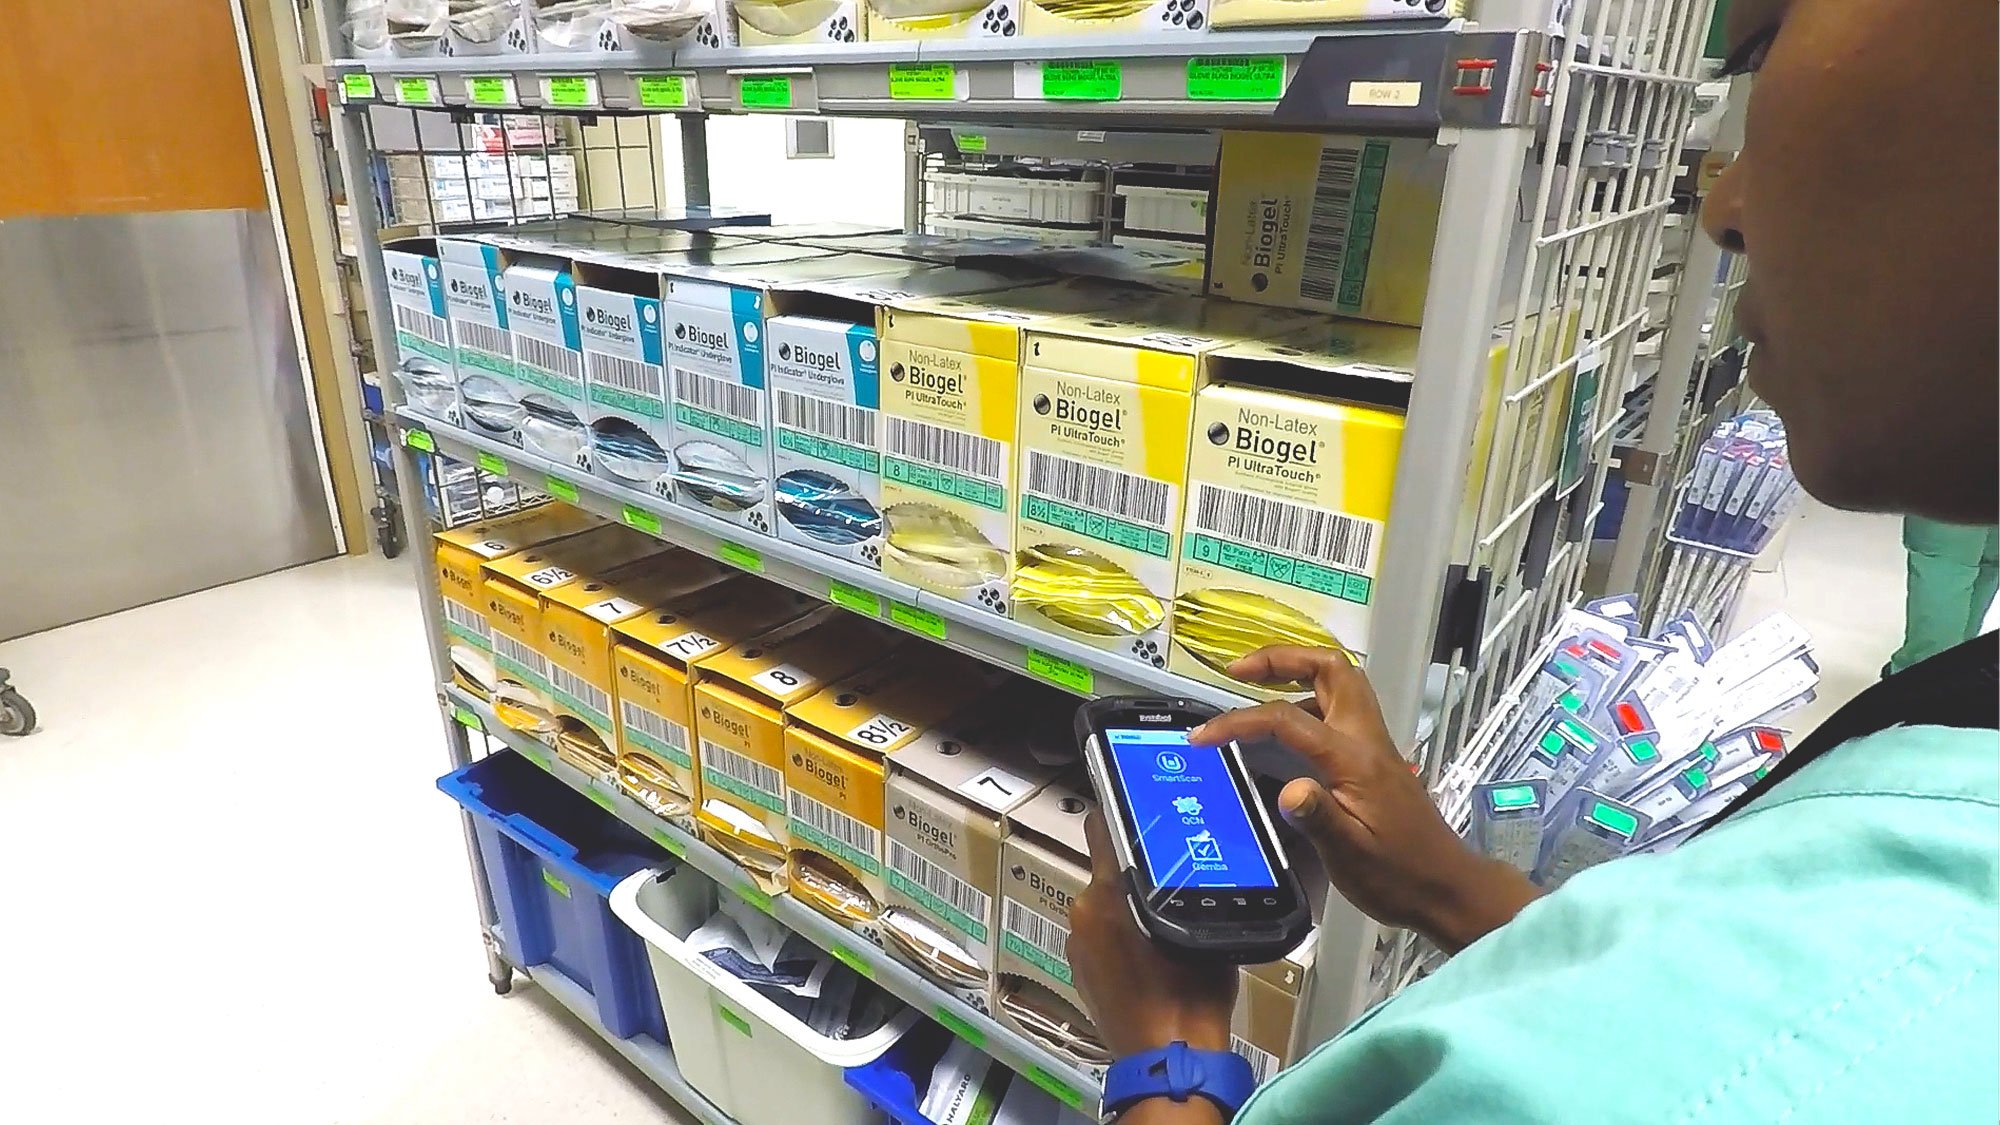 supply chain worker scanning supplies with SmartScan handheld